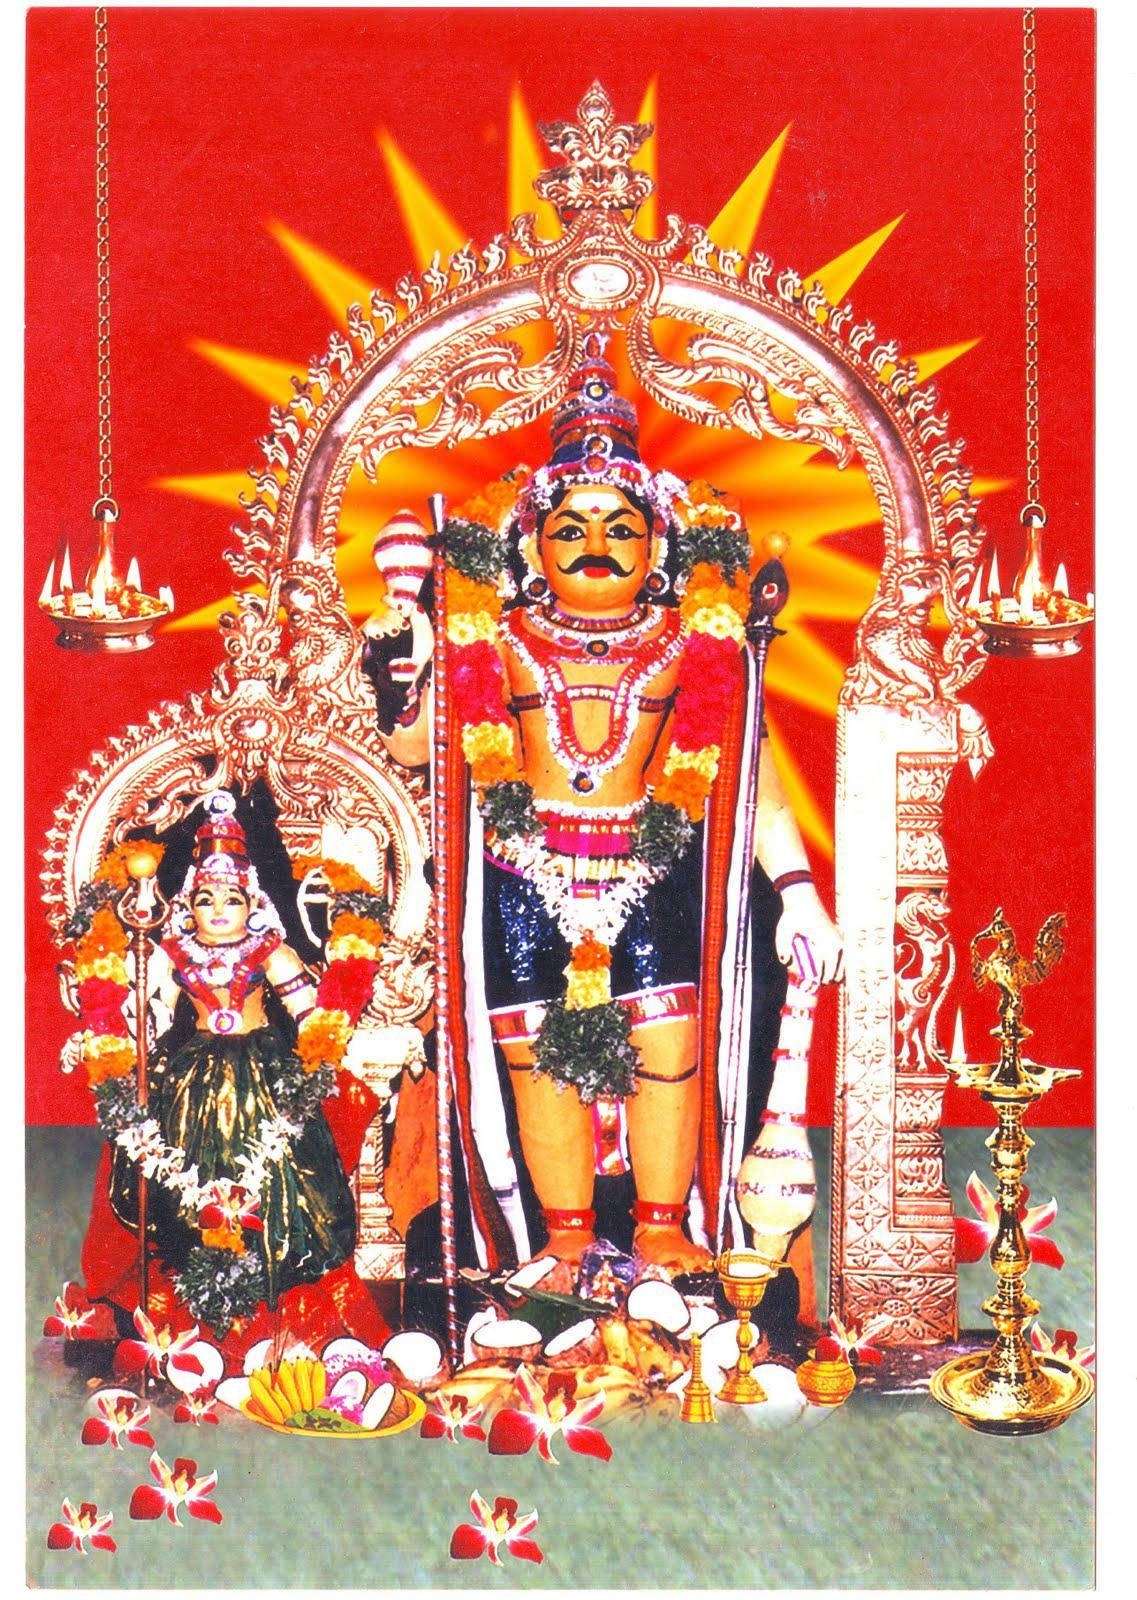 Tamil god photos - Karuppasamy Red Aesthetic Sun